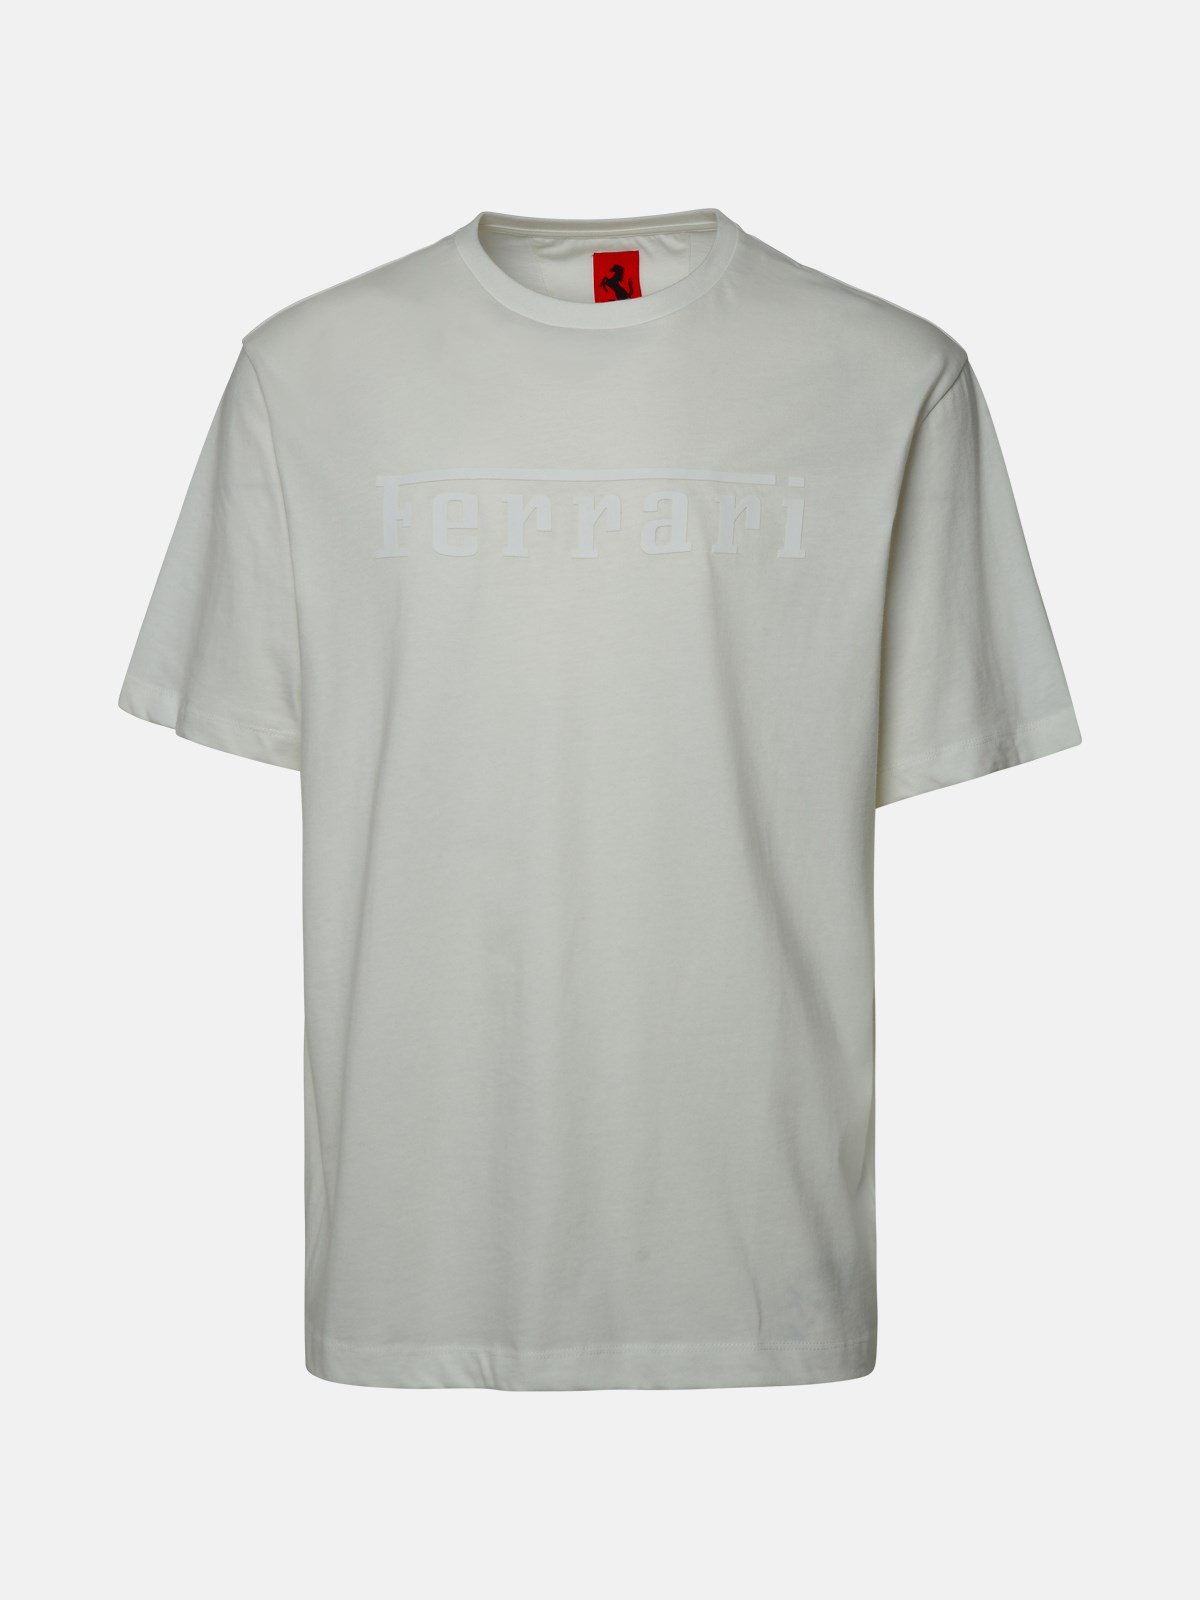 Ferrari T-shirt Logo In White